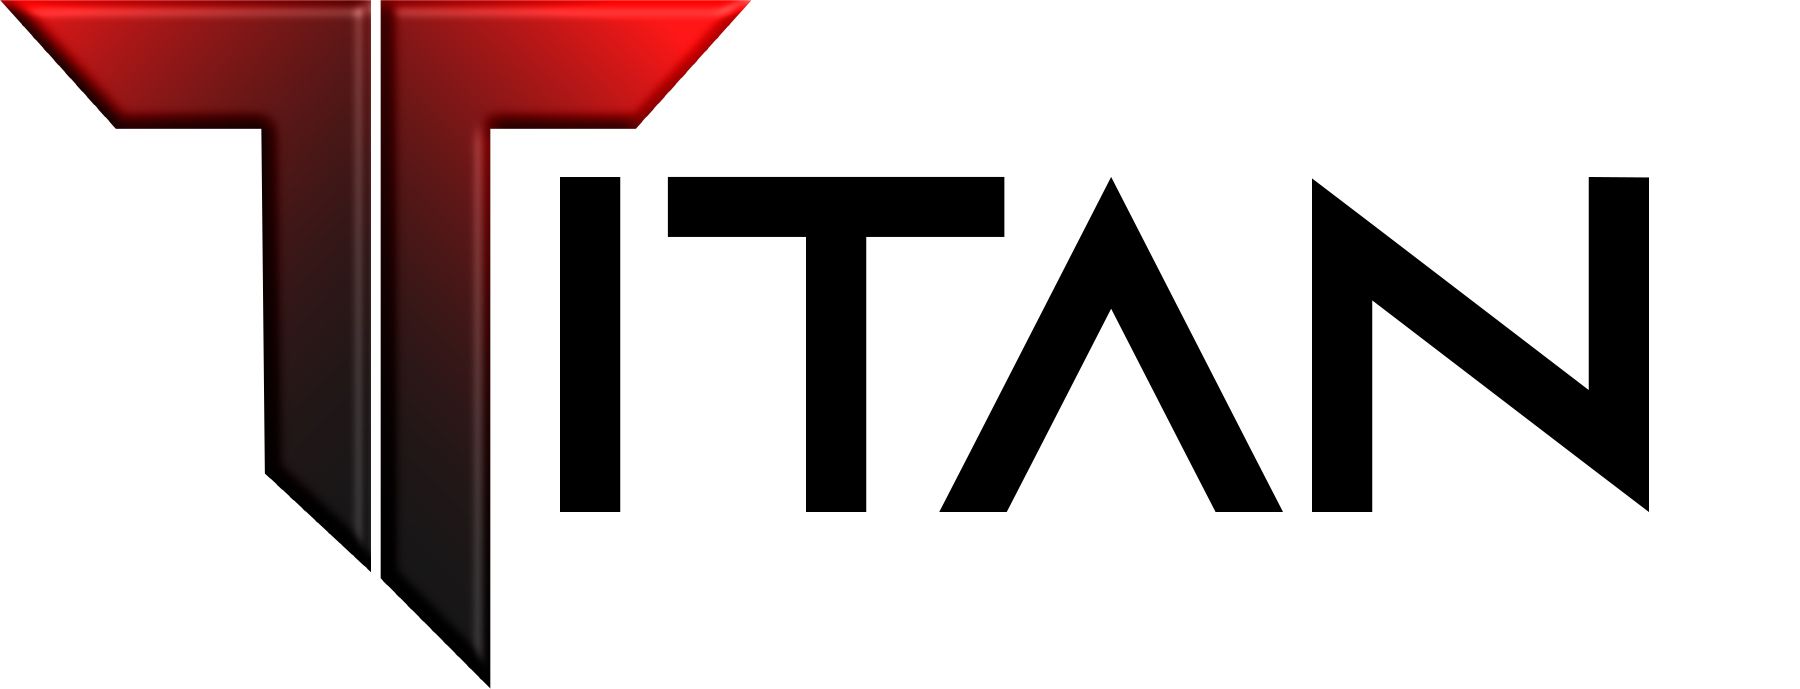 titan-logo